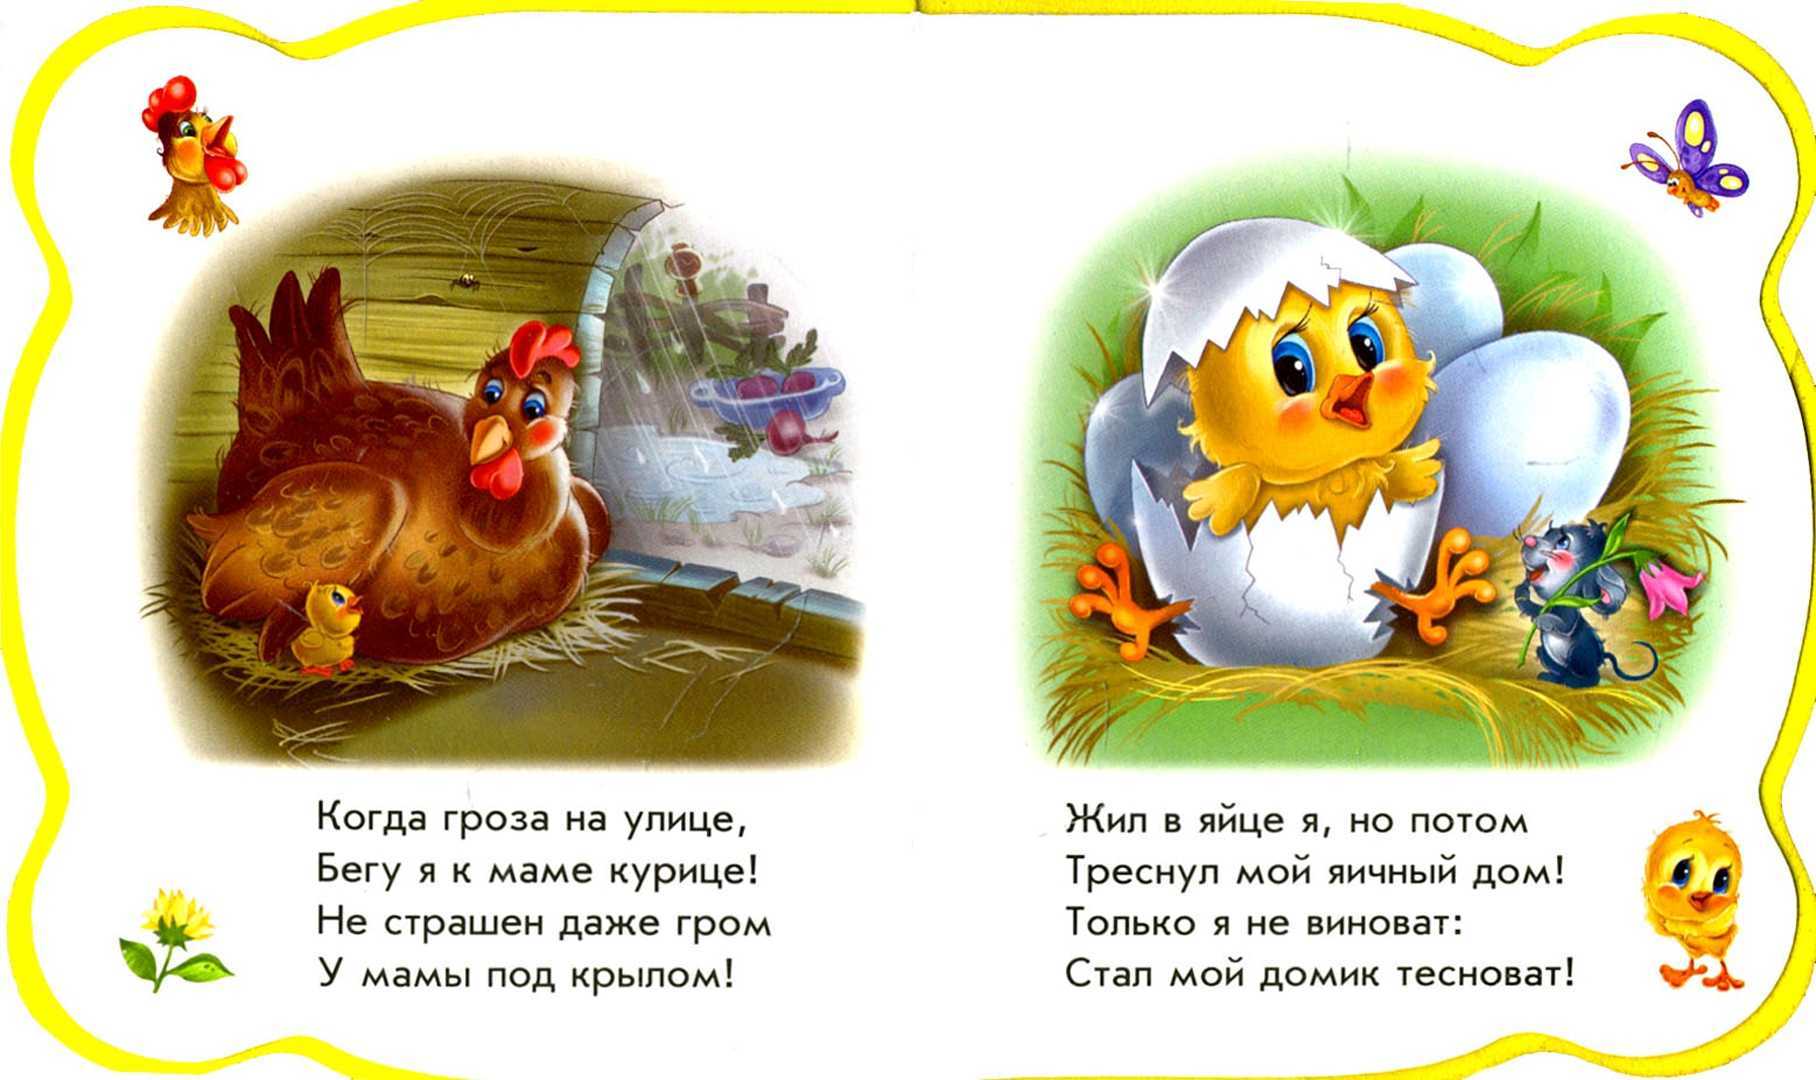 Загадки про курицу для детей: сборник из 60 забавных головоломок с ответами / mama66.ru